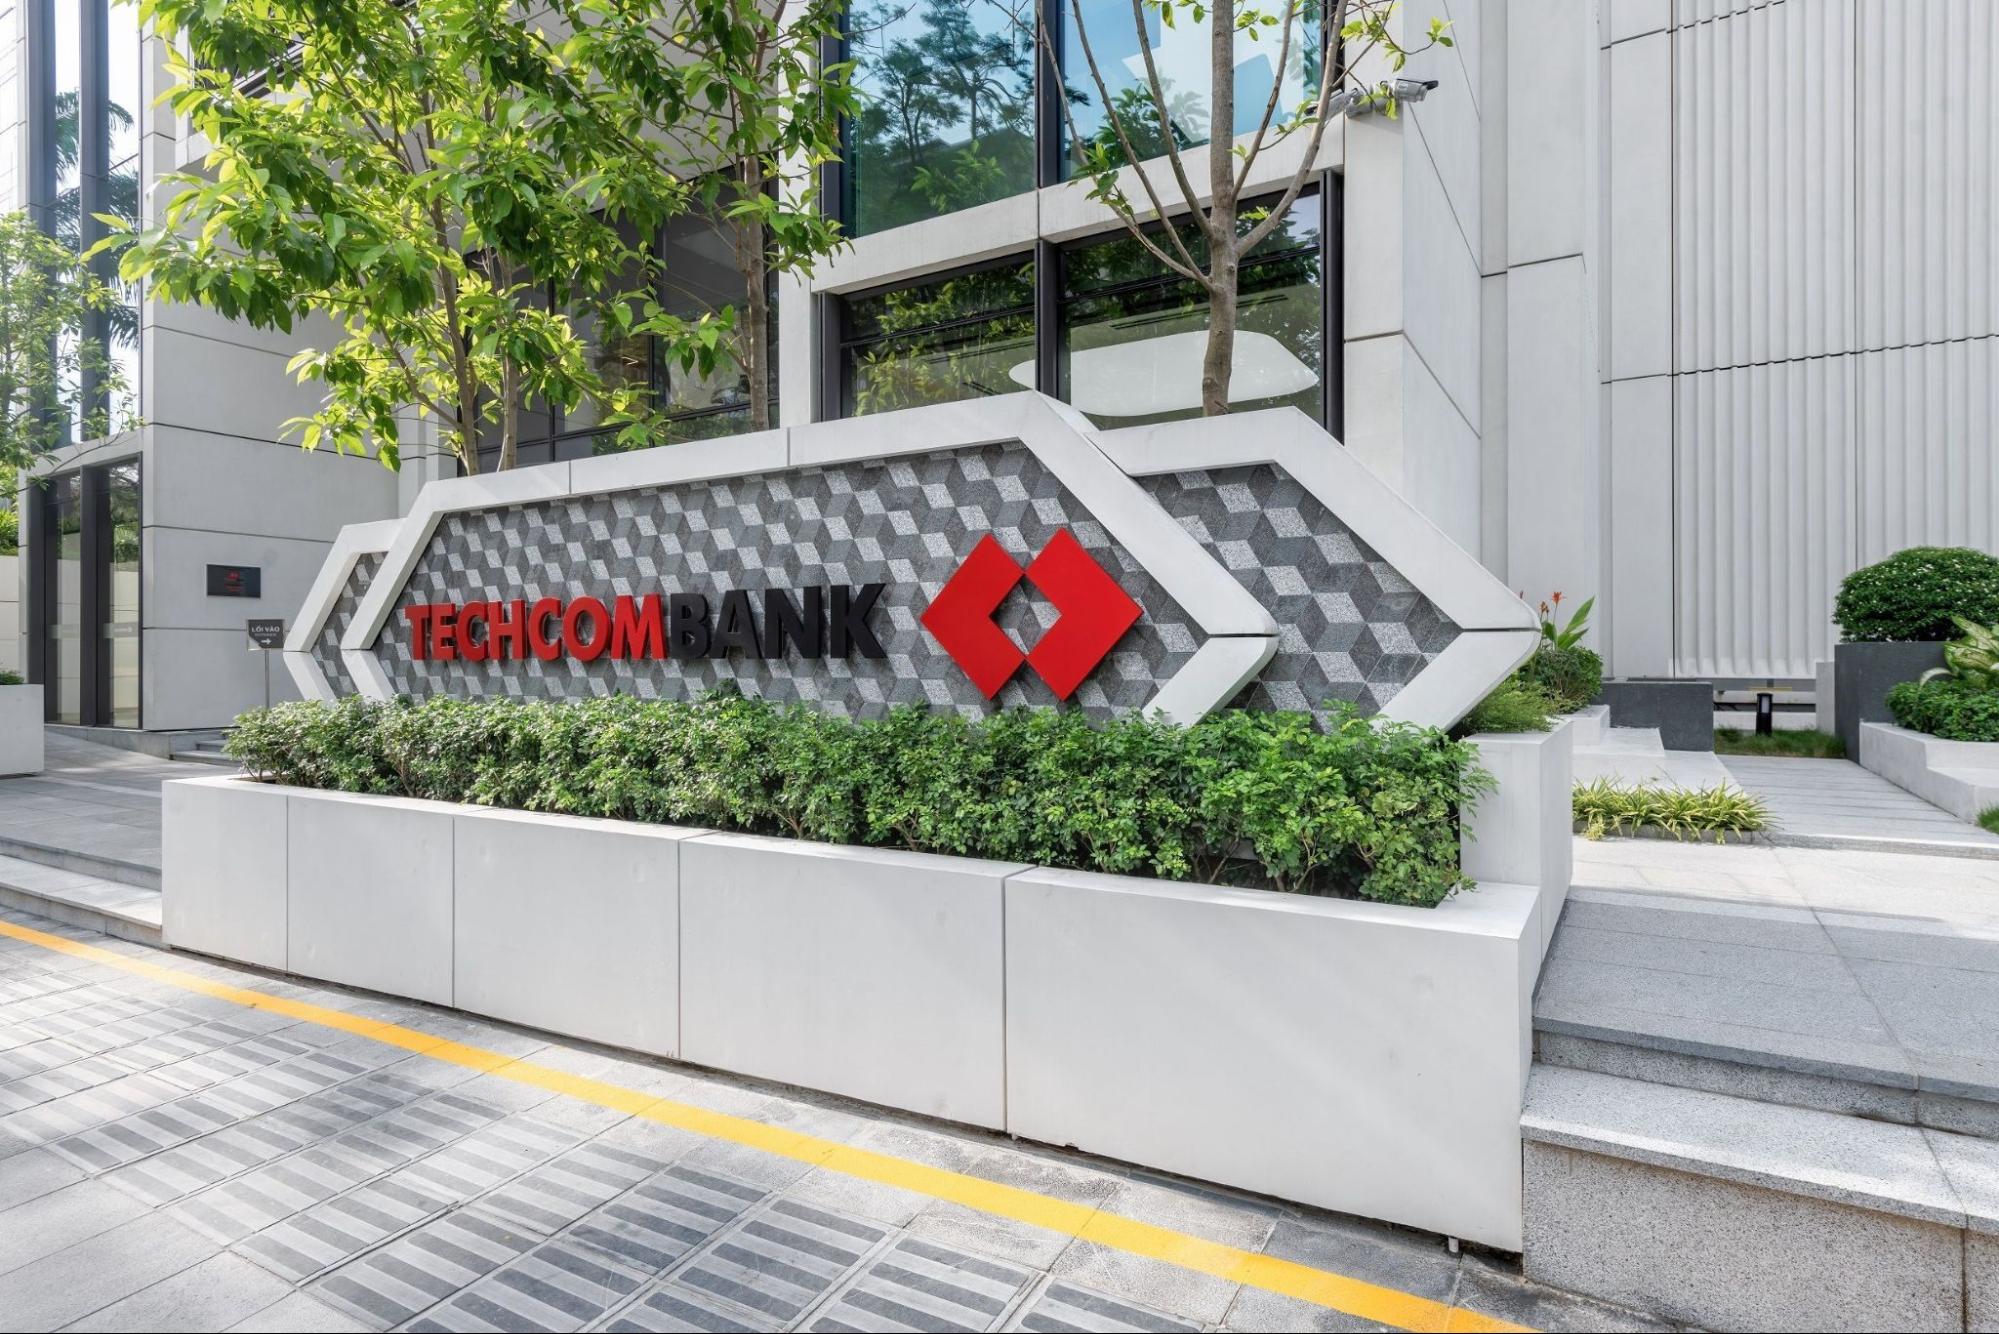 Techcombank cho vay mua nhà: Quy trình vay vốn mua dự án Masteri Waterfront